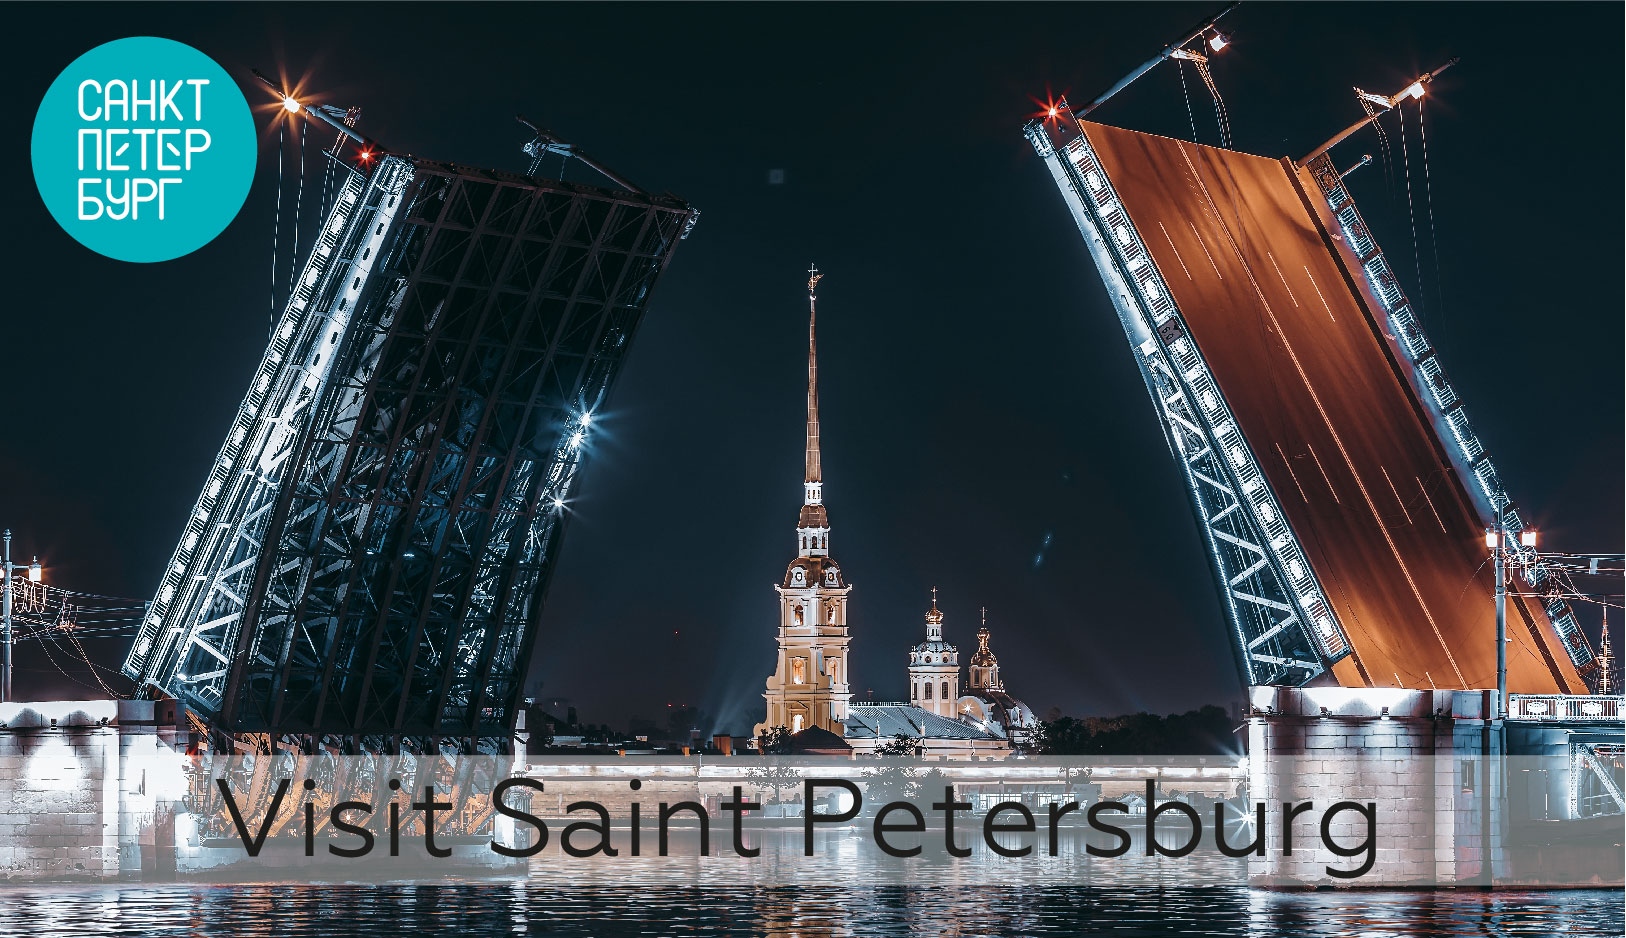 Приглашаем в роуд-шоу «Visit Saint Petersburg!» по городам Вьетнама